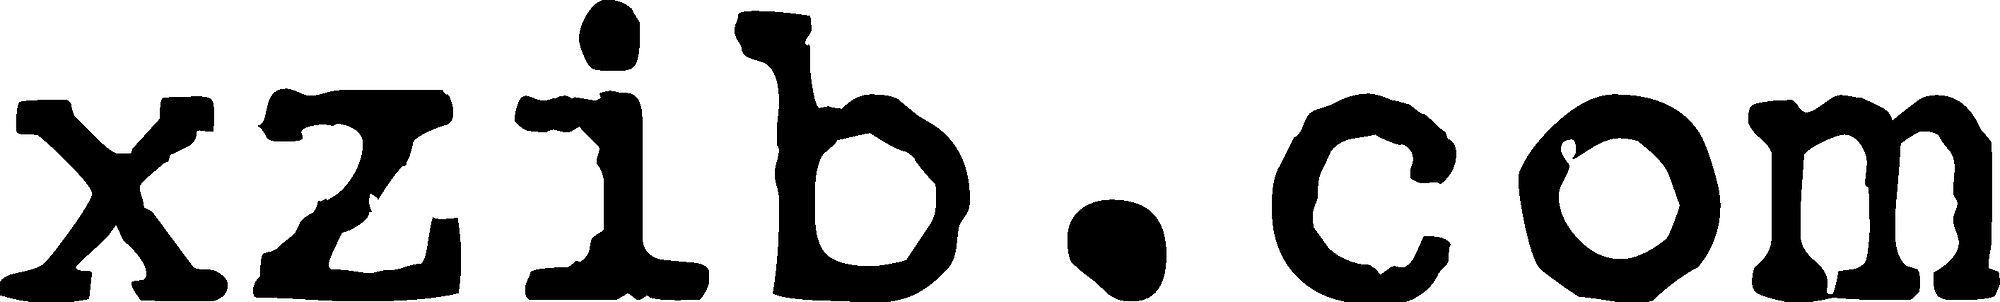 xzib.com logo black transparent